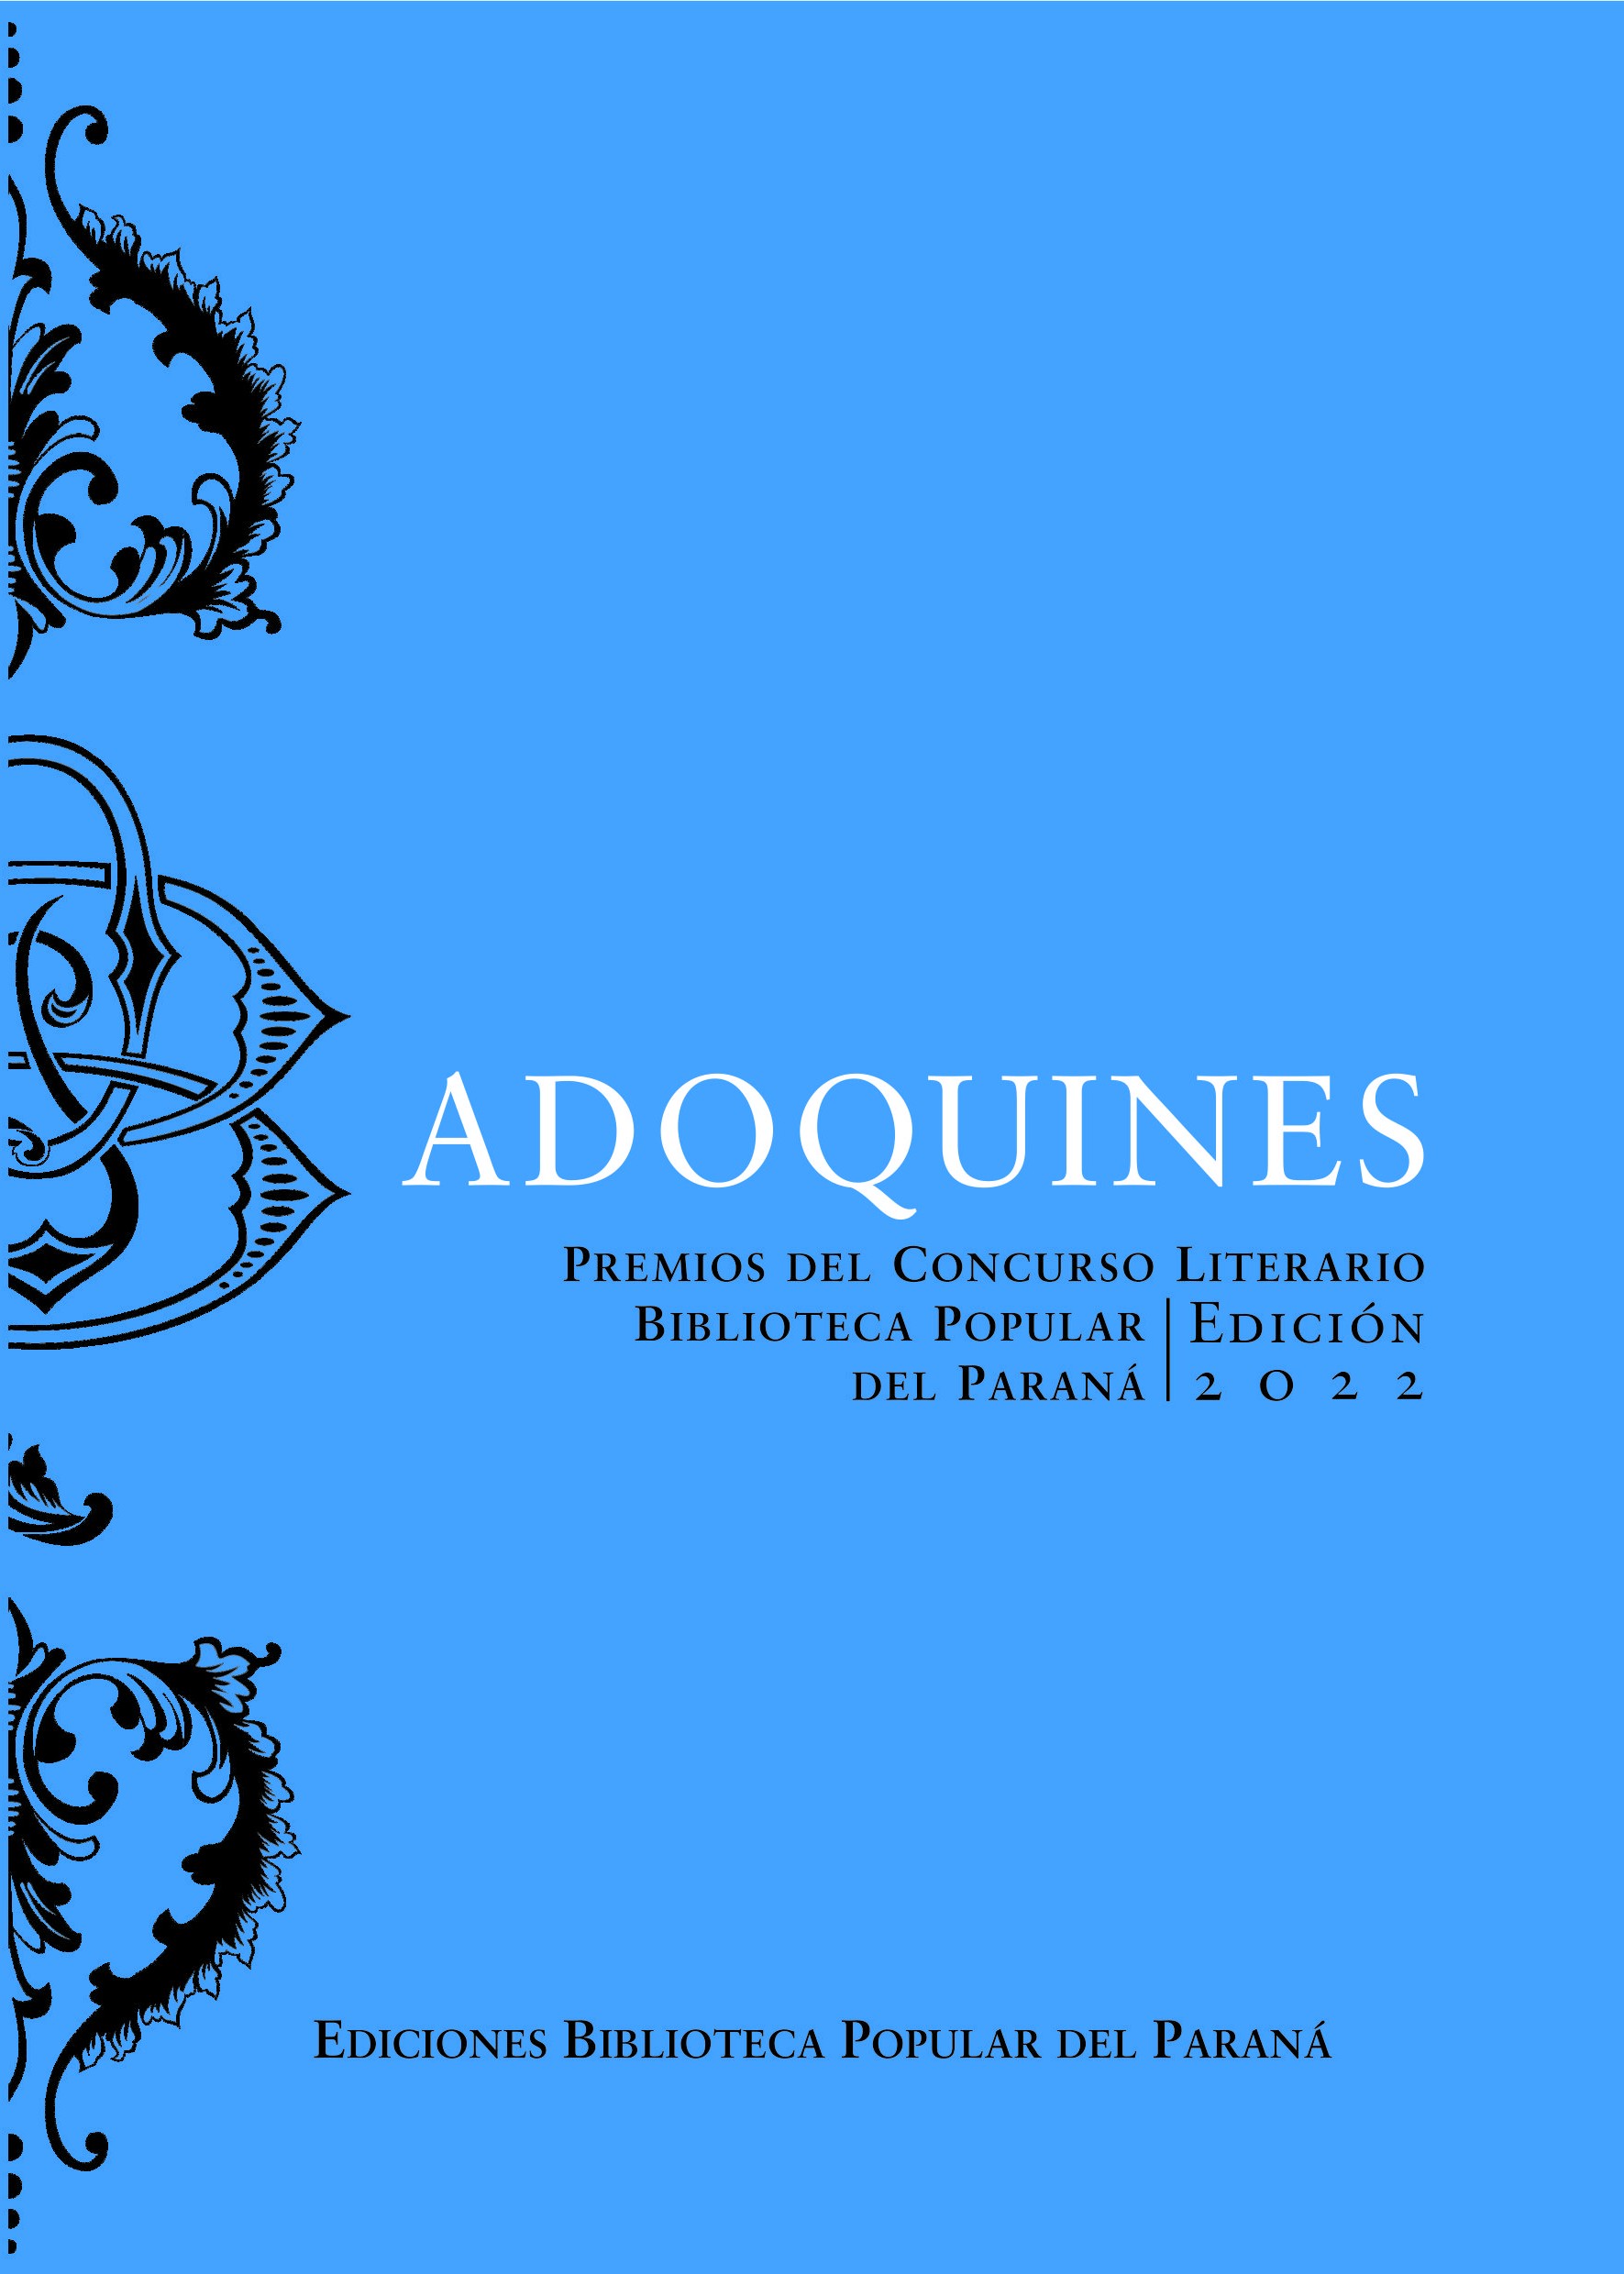 Adoquines - Premios del Concurso Biblioteca Popular del Paraná, Edición 2022